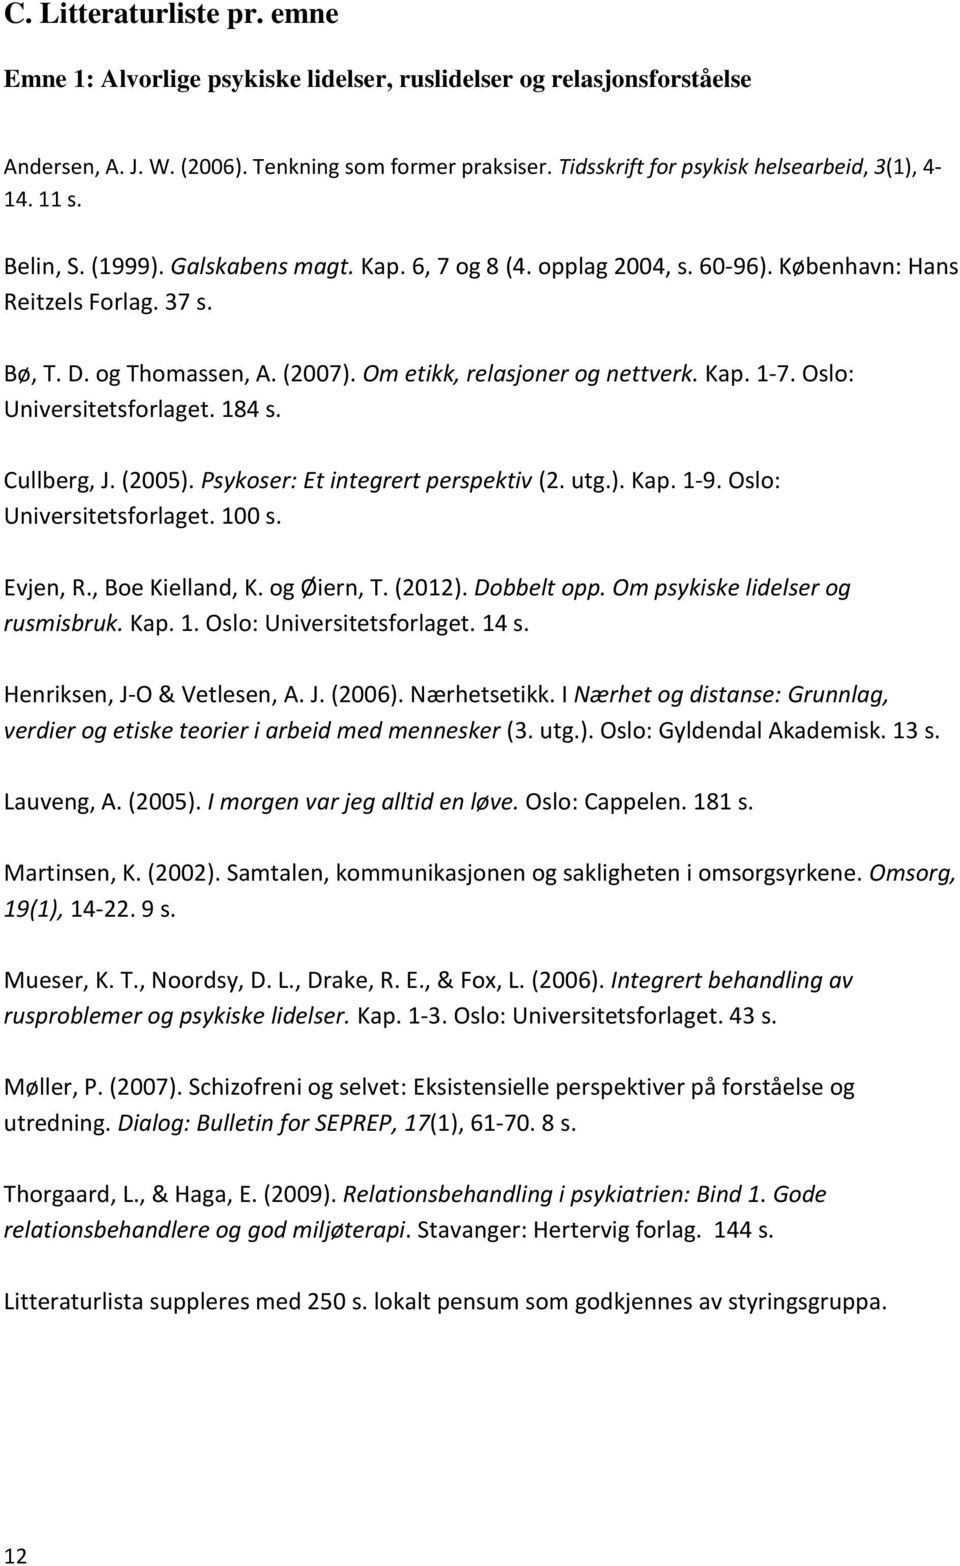 (2007). Om etikk, relasjoner og nettverk. Kap. 1-7. Oslo: Universitetsforlaget. 184 s. Cullberg, J. (2005). Psykoser: Et integrert perspektiv (2. utg.). Kap. 1-9. Oslo: Universitetsforlaget. 100 s.